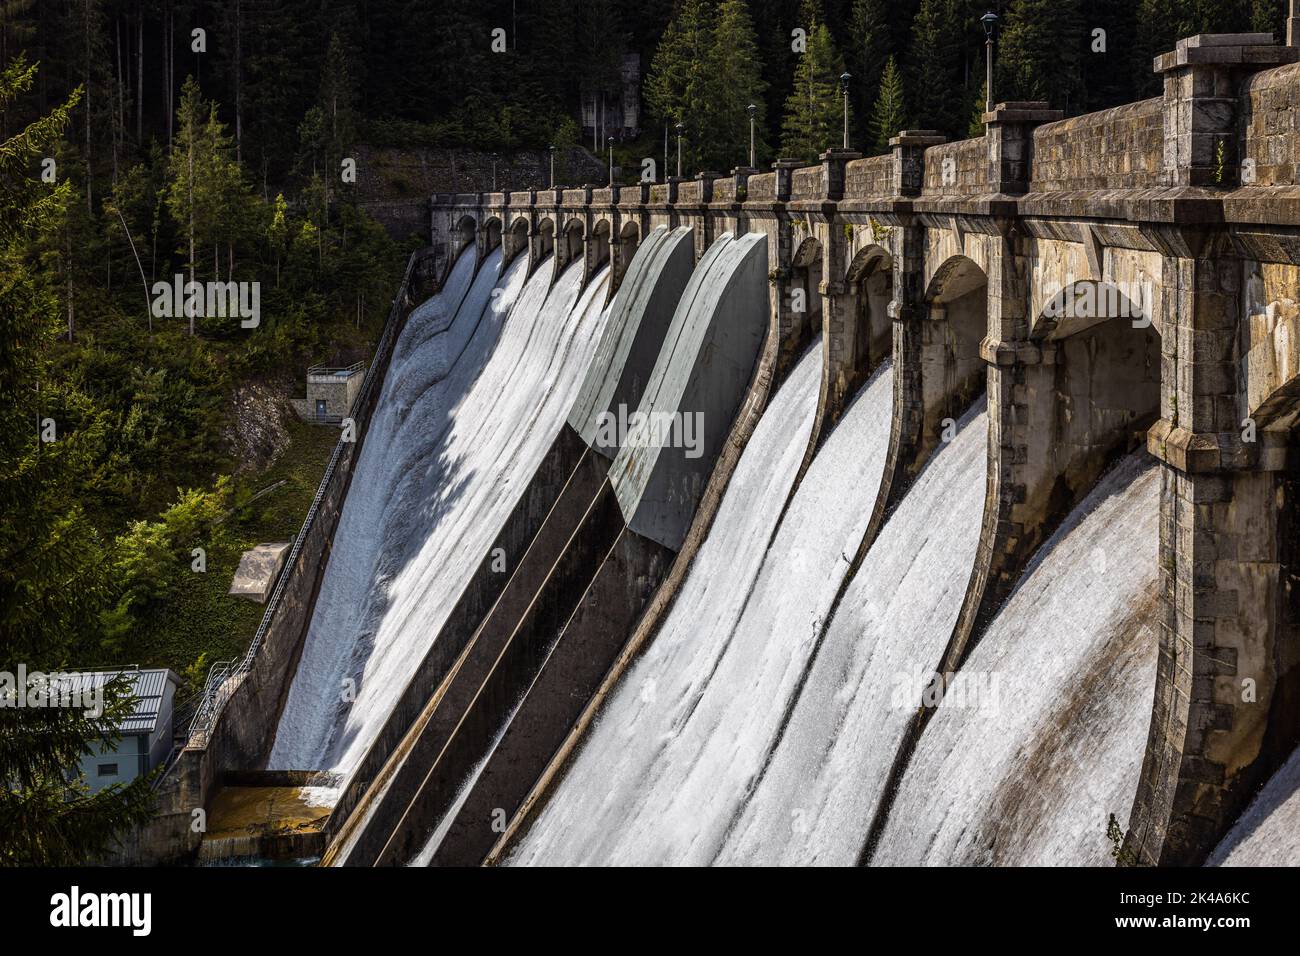 Dam Of Santa Caterina, Italy Stock Photo